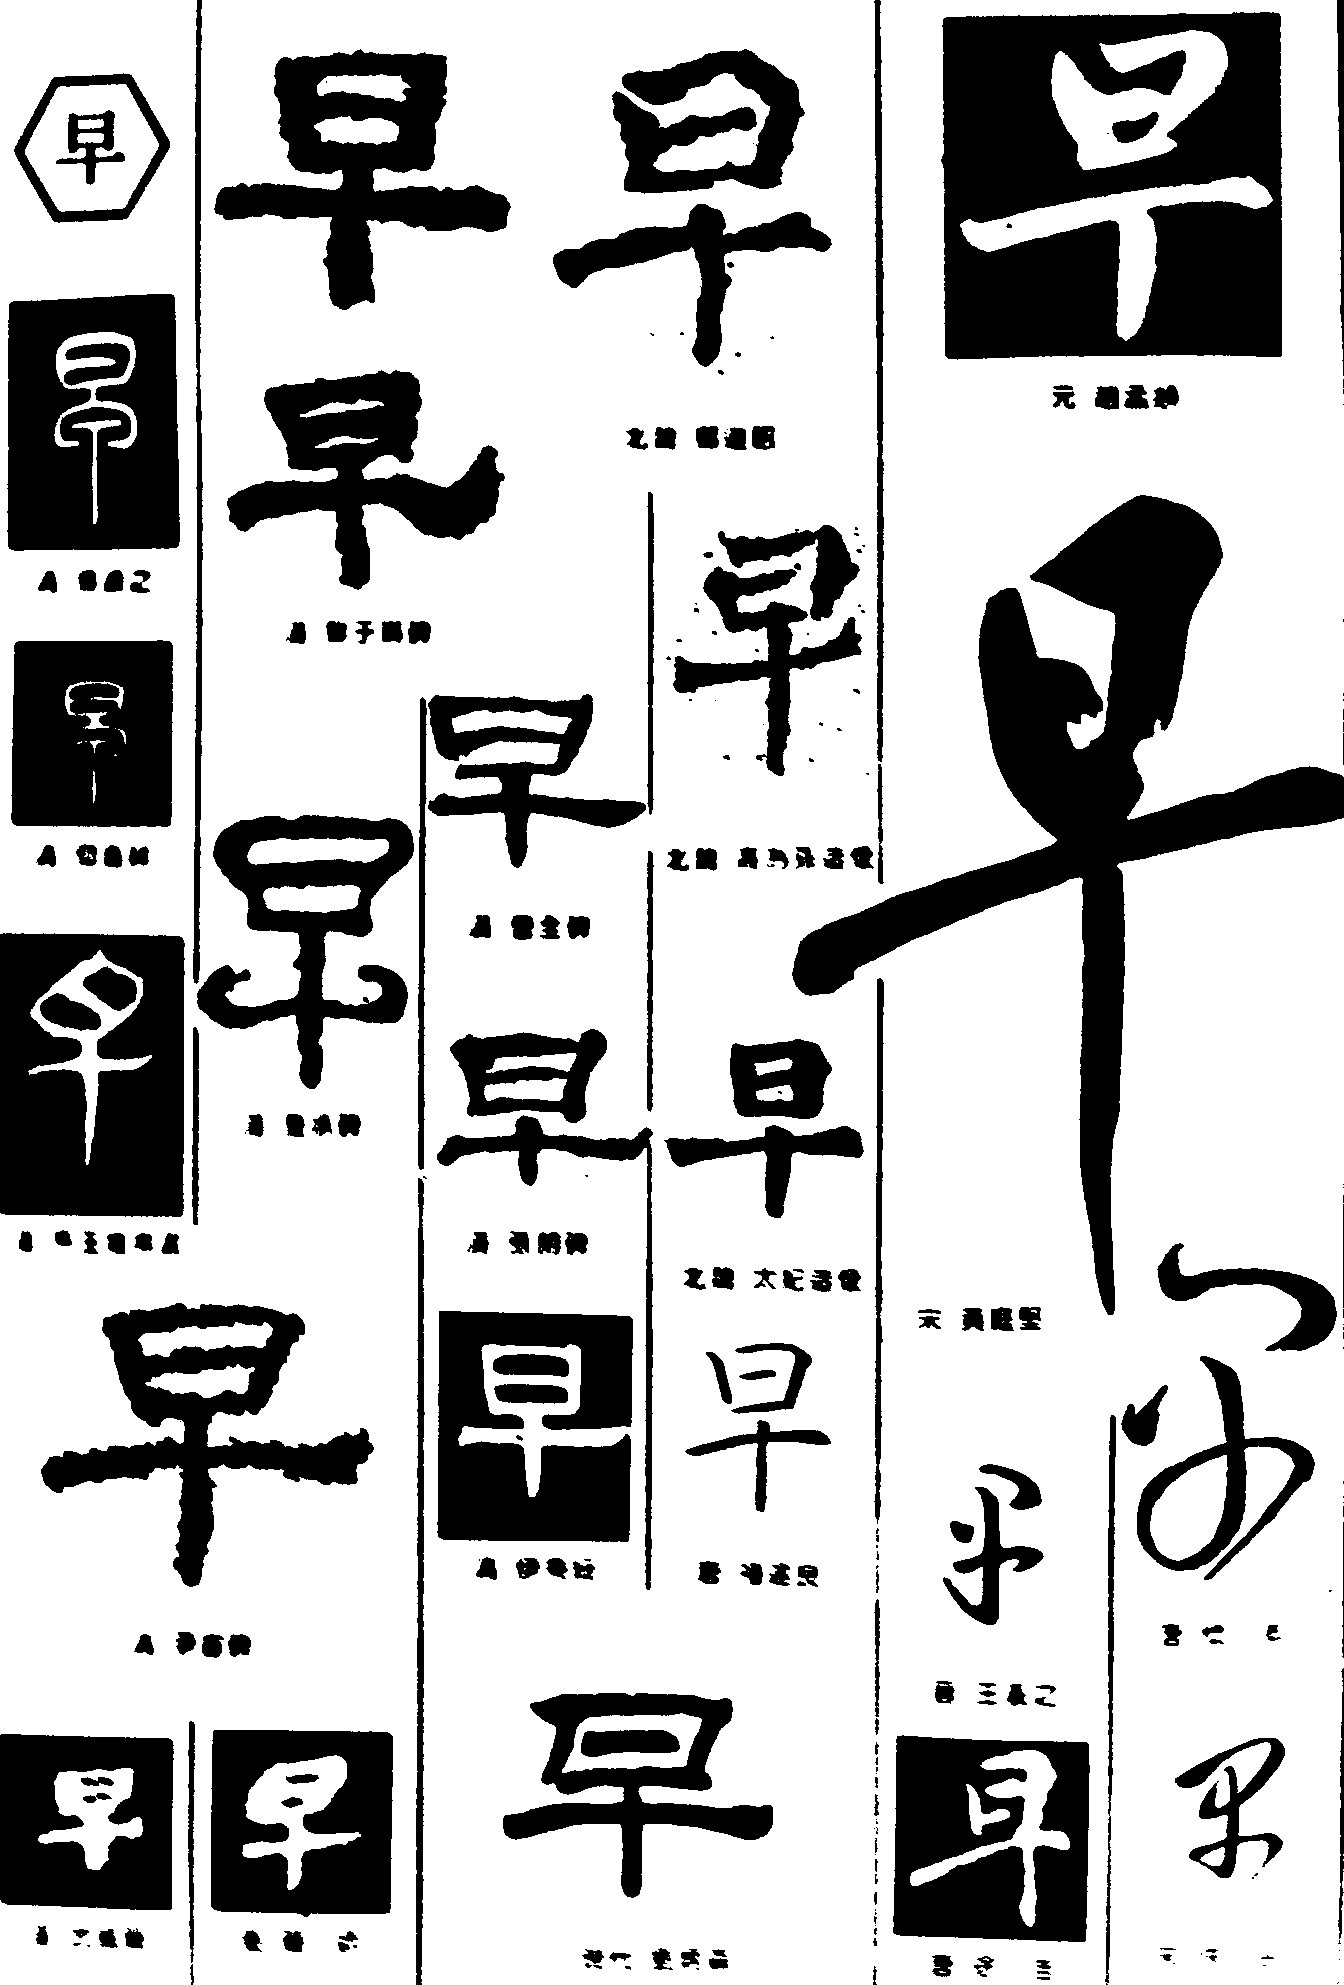 早_书法字体_字体设计作品-中国字体设计网_ziti.